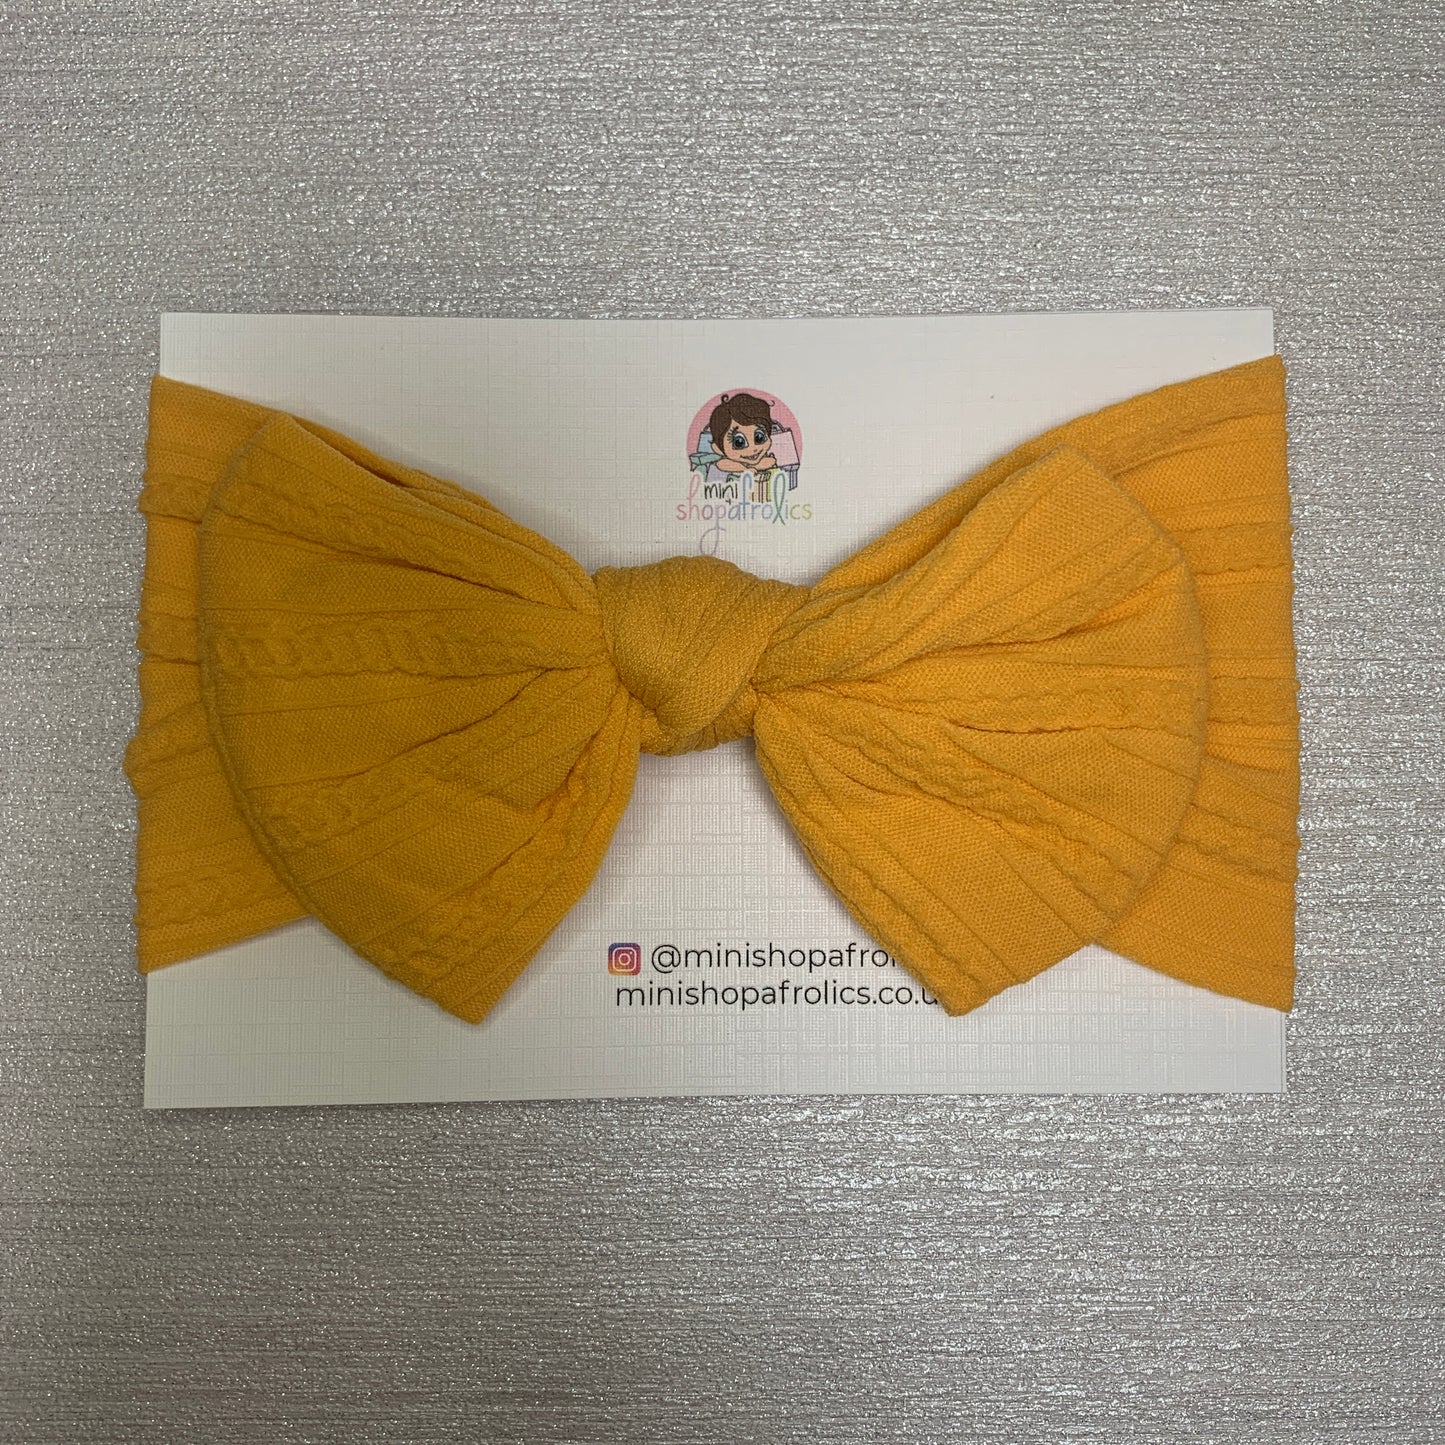 Honey yellow baby bow headband on backing card